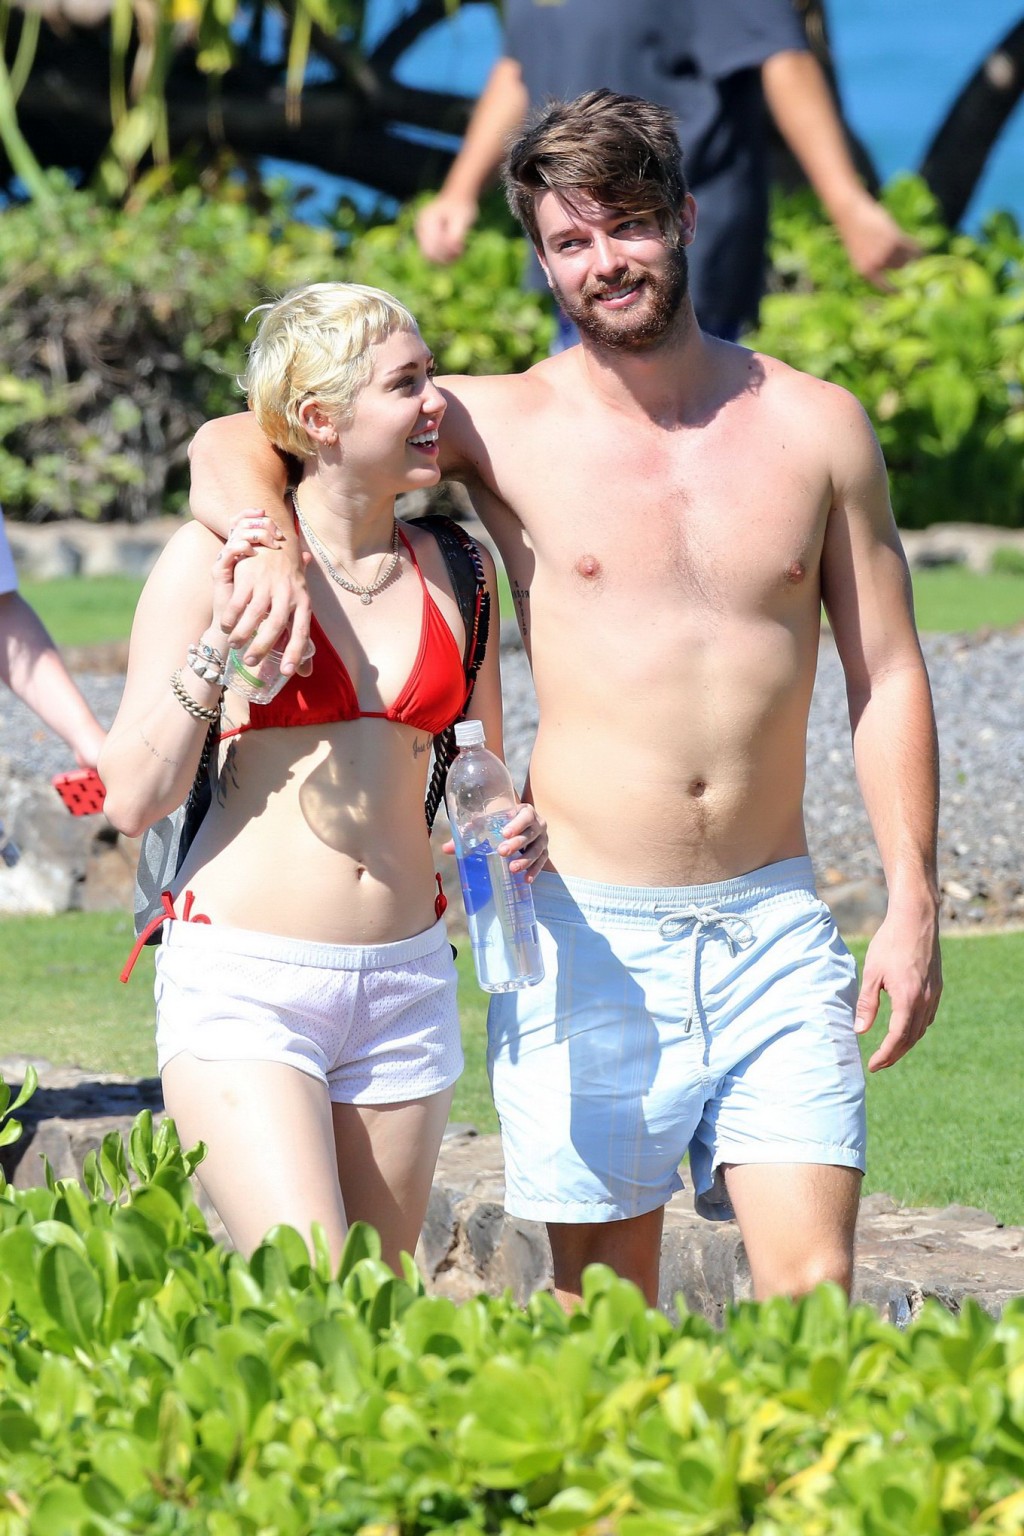 Miley cyrus con un diminuto bikini rojo y unos shorts transparentes en sus vacaciones en hawai
 #75175111